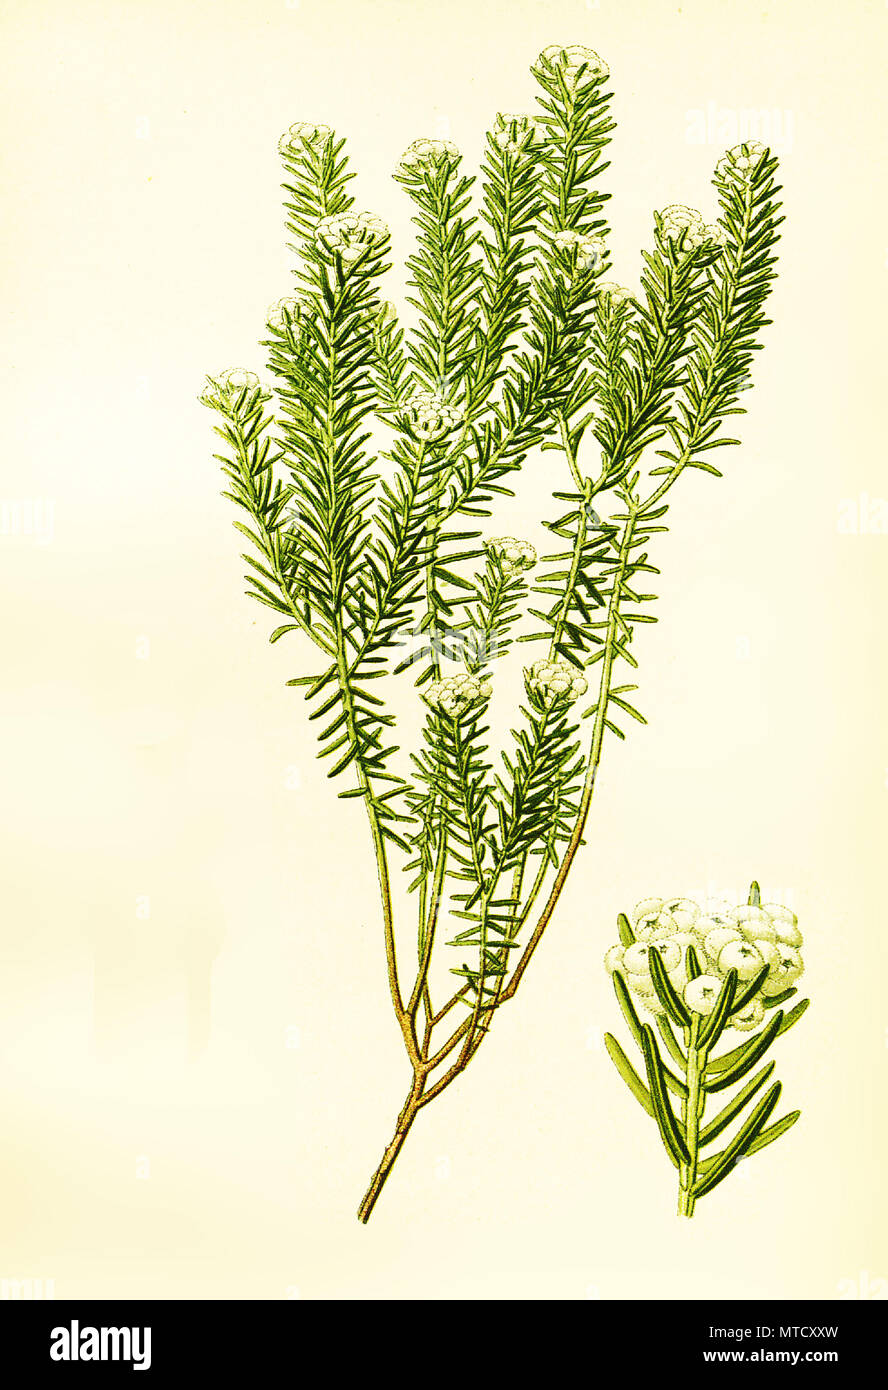 Phylica ericoides, Phylica è un genere di piante della famiglia Rhamnaceae. Phylica ist eine Gattung aus der Familie der KreuzdorngewÃ¤chse, digitale riproduzione migliorata da una stampa del XIX secolo Foto Stock